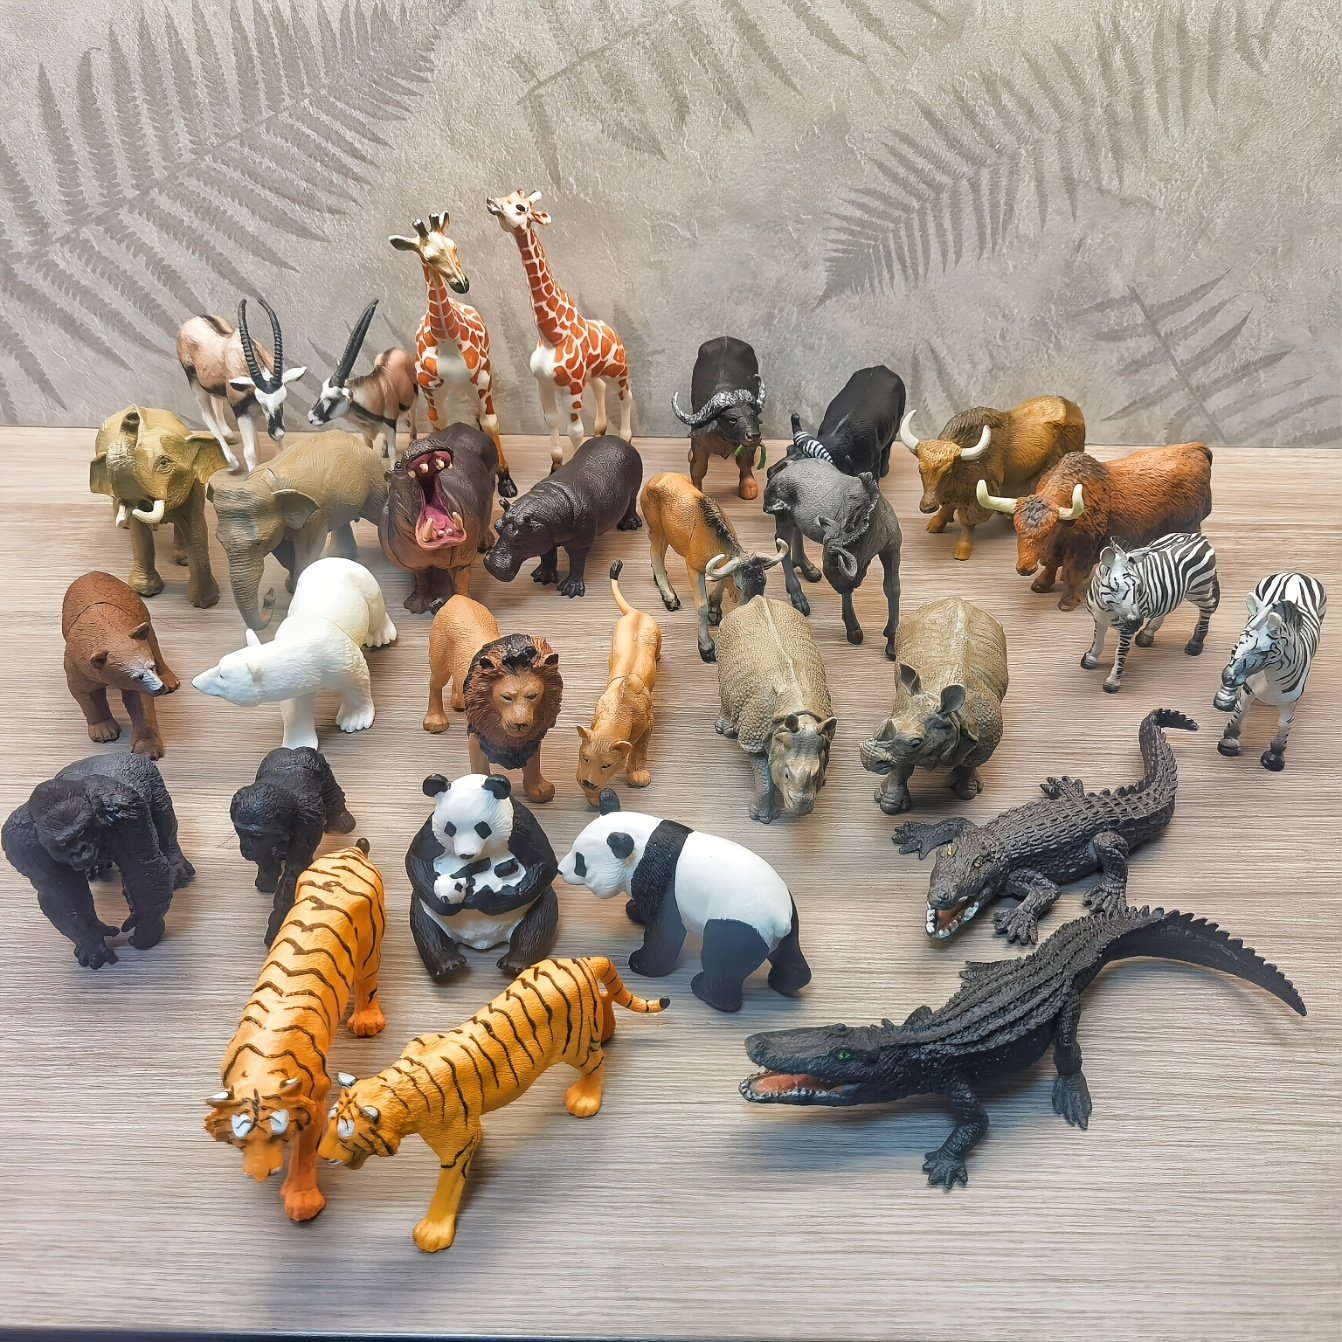 FRUSE d'animaux Jouet pour Enfants,12 Pièces Réaliste Animaux de la  Jungle,Figurine Animaux avec Panda,Lion,Eléphant,Jouets Éducatifs Cadeaux  pour